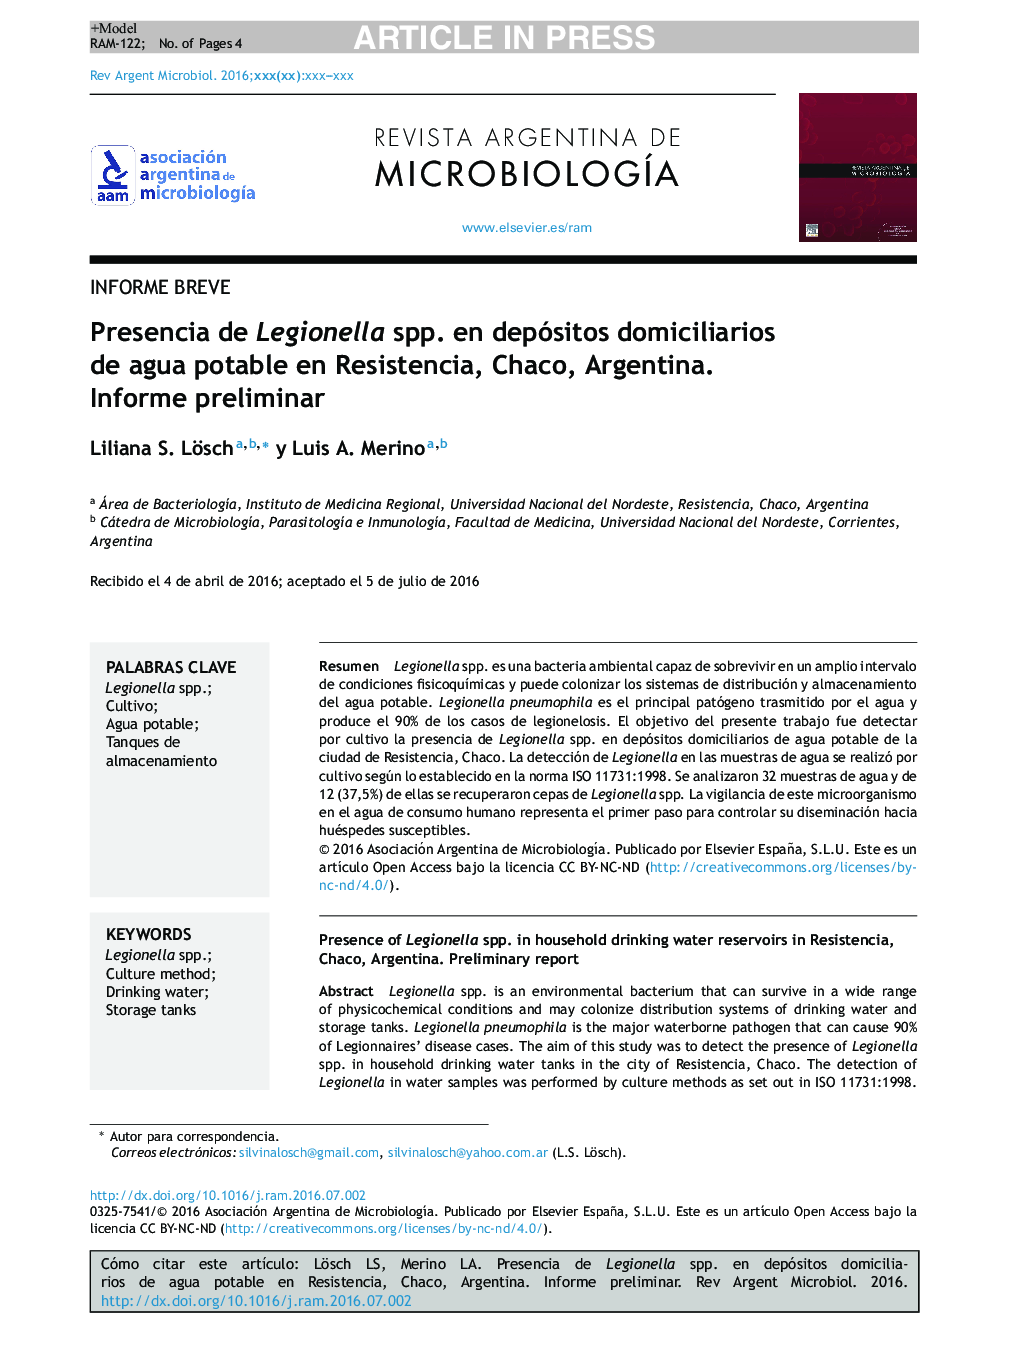 Presencia de Legionella spp. en depósitos domiciliarios de agua potable en Resistencia, Chaco, Argentina. Informe preliminar